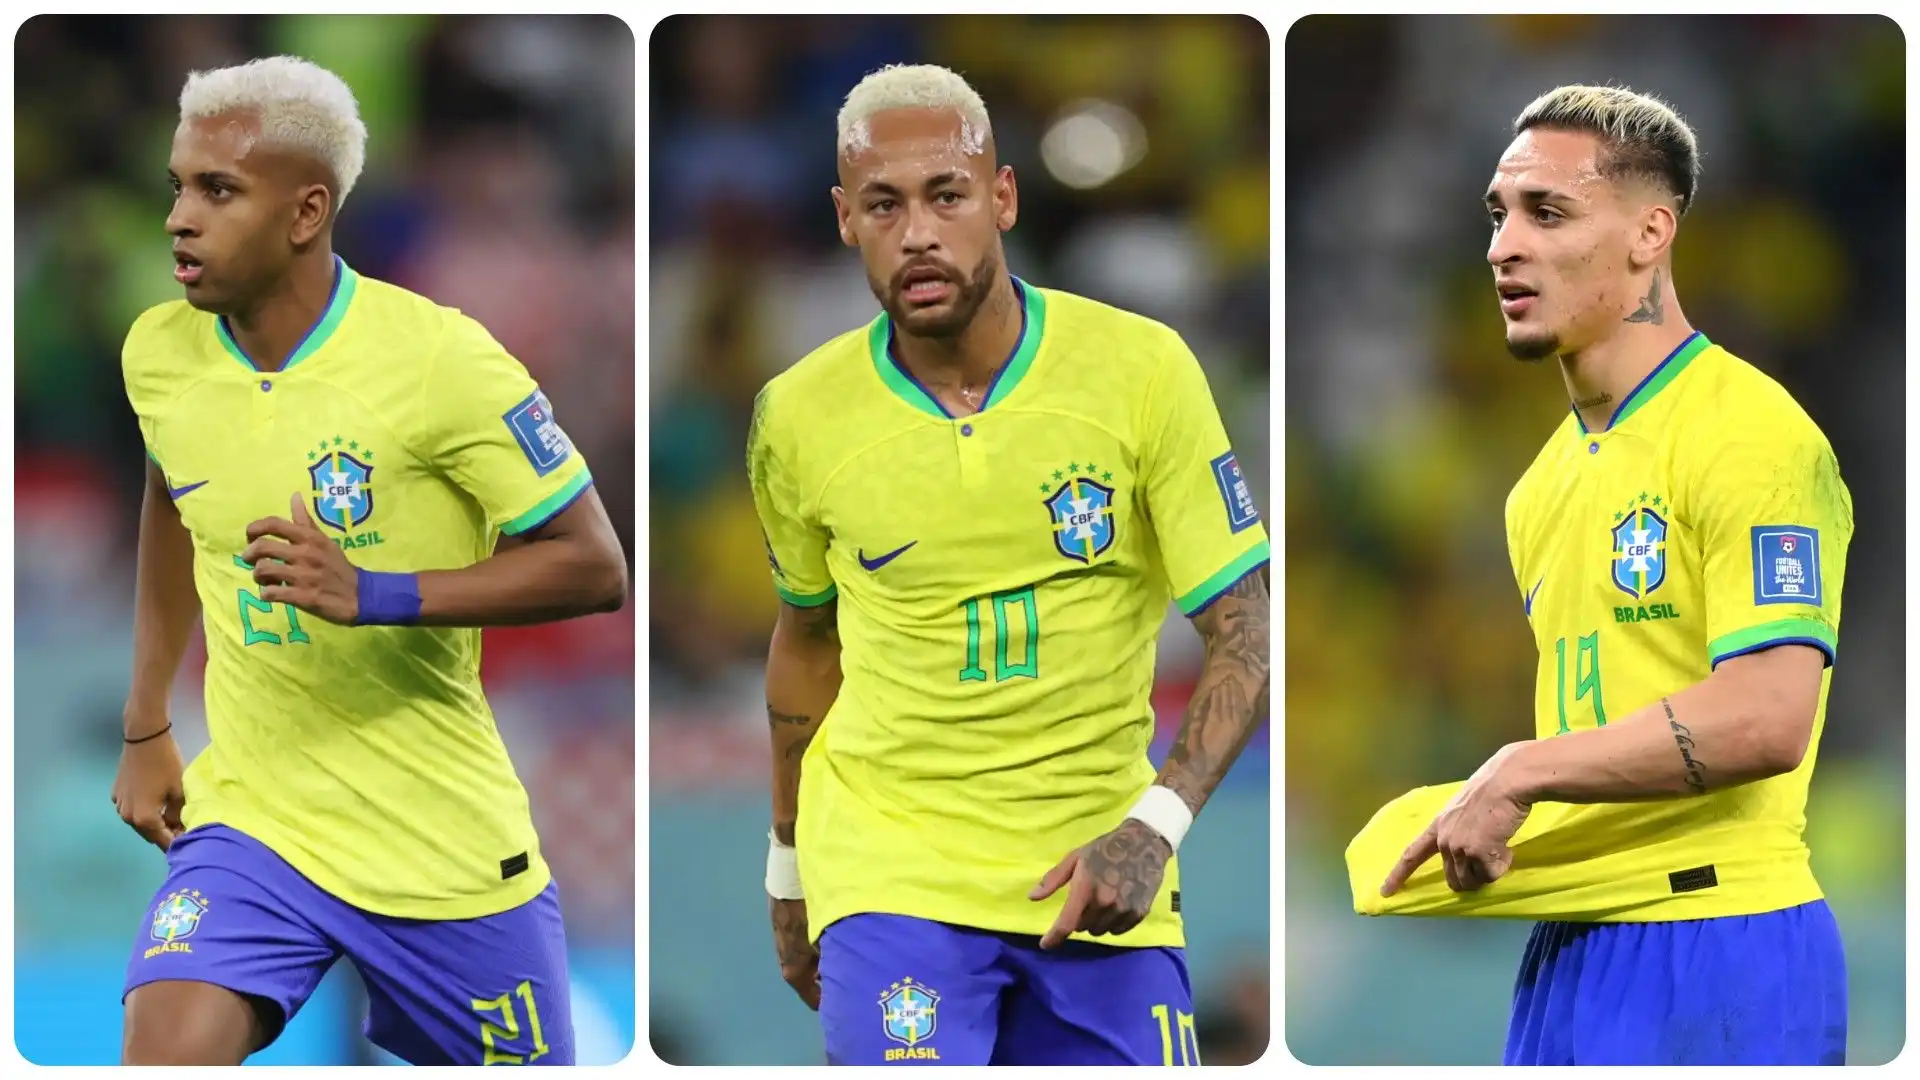 I 10 calciatori brasiliani più preziosi. La classifica in foto. Fonte: Transfermarkt